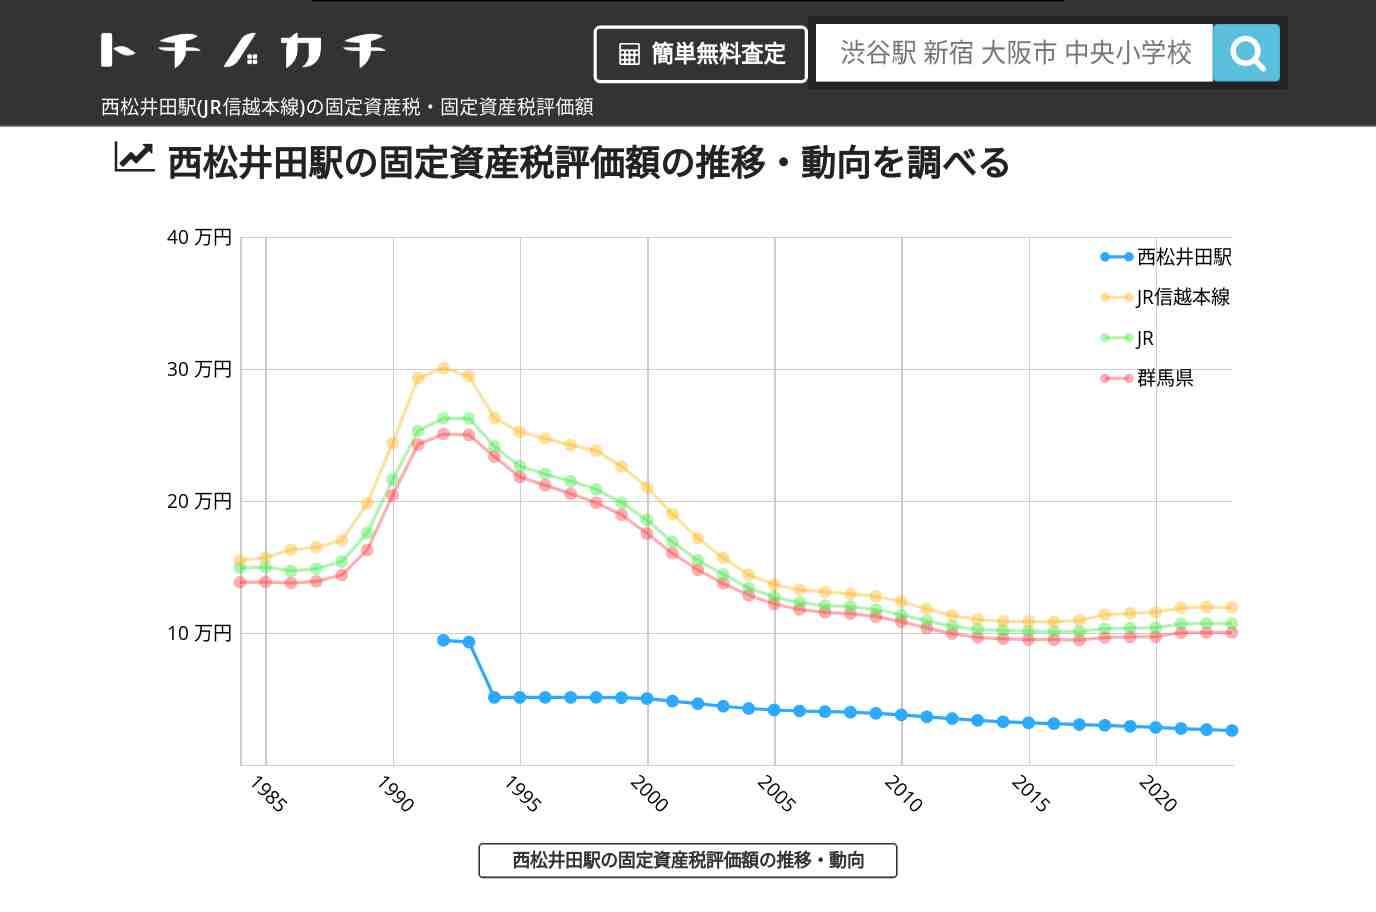 西松井田駅(JR信越本線)の固定資産税・固定資産税評価額 | トチノカチ